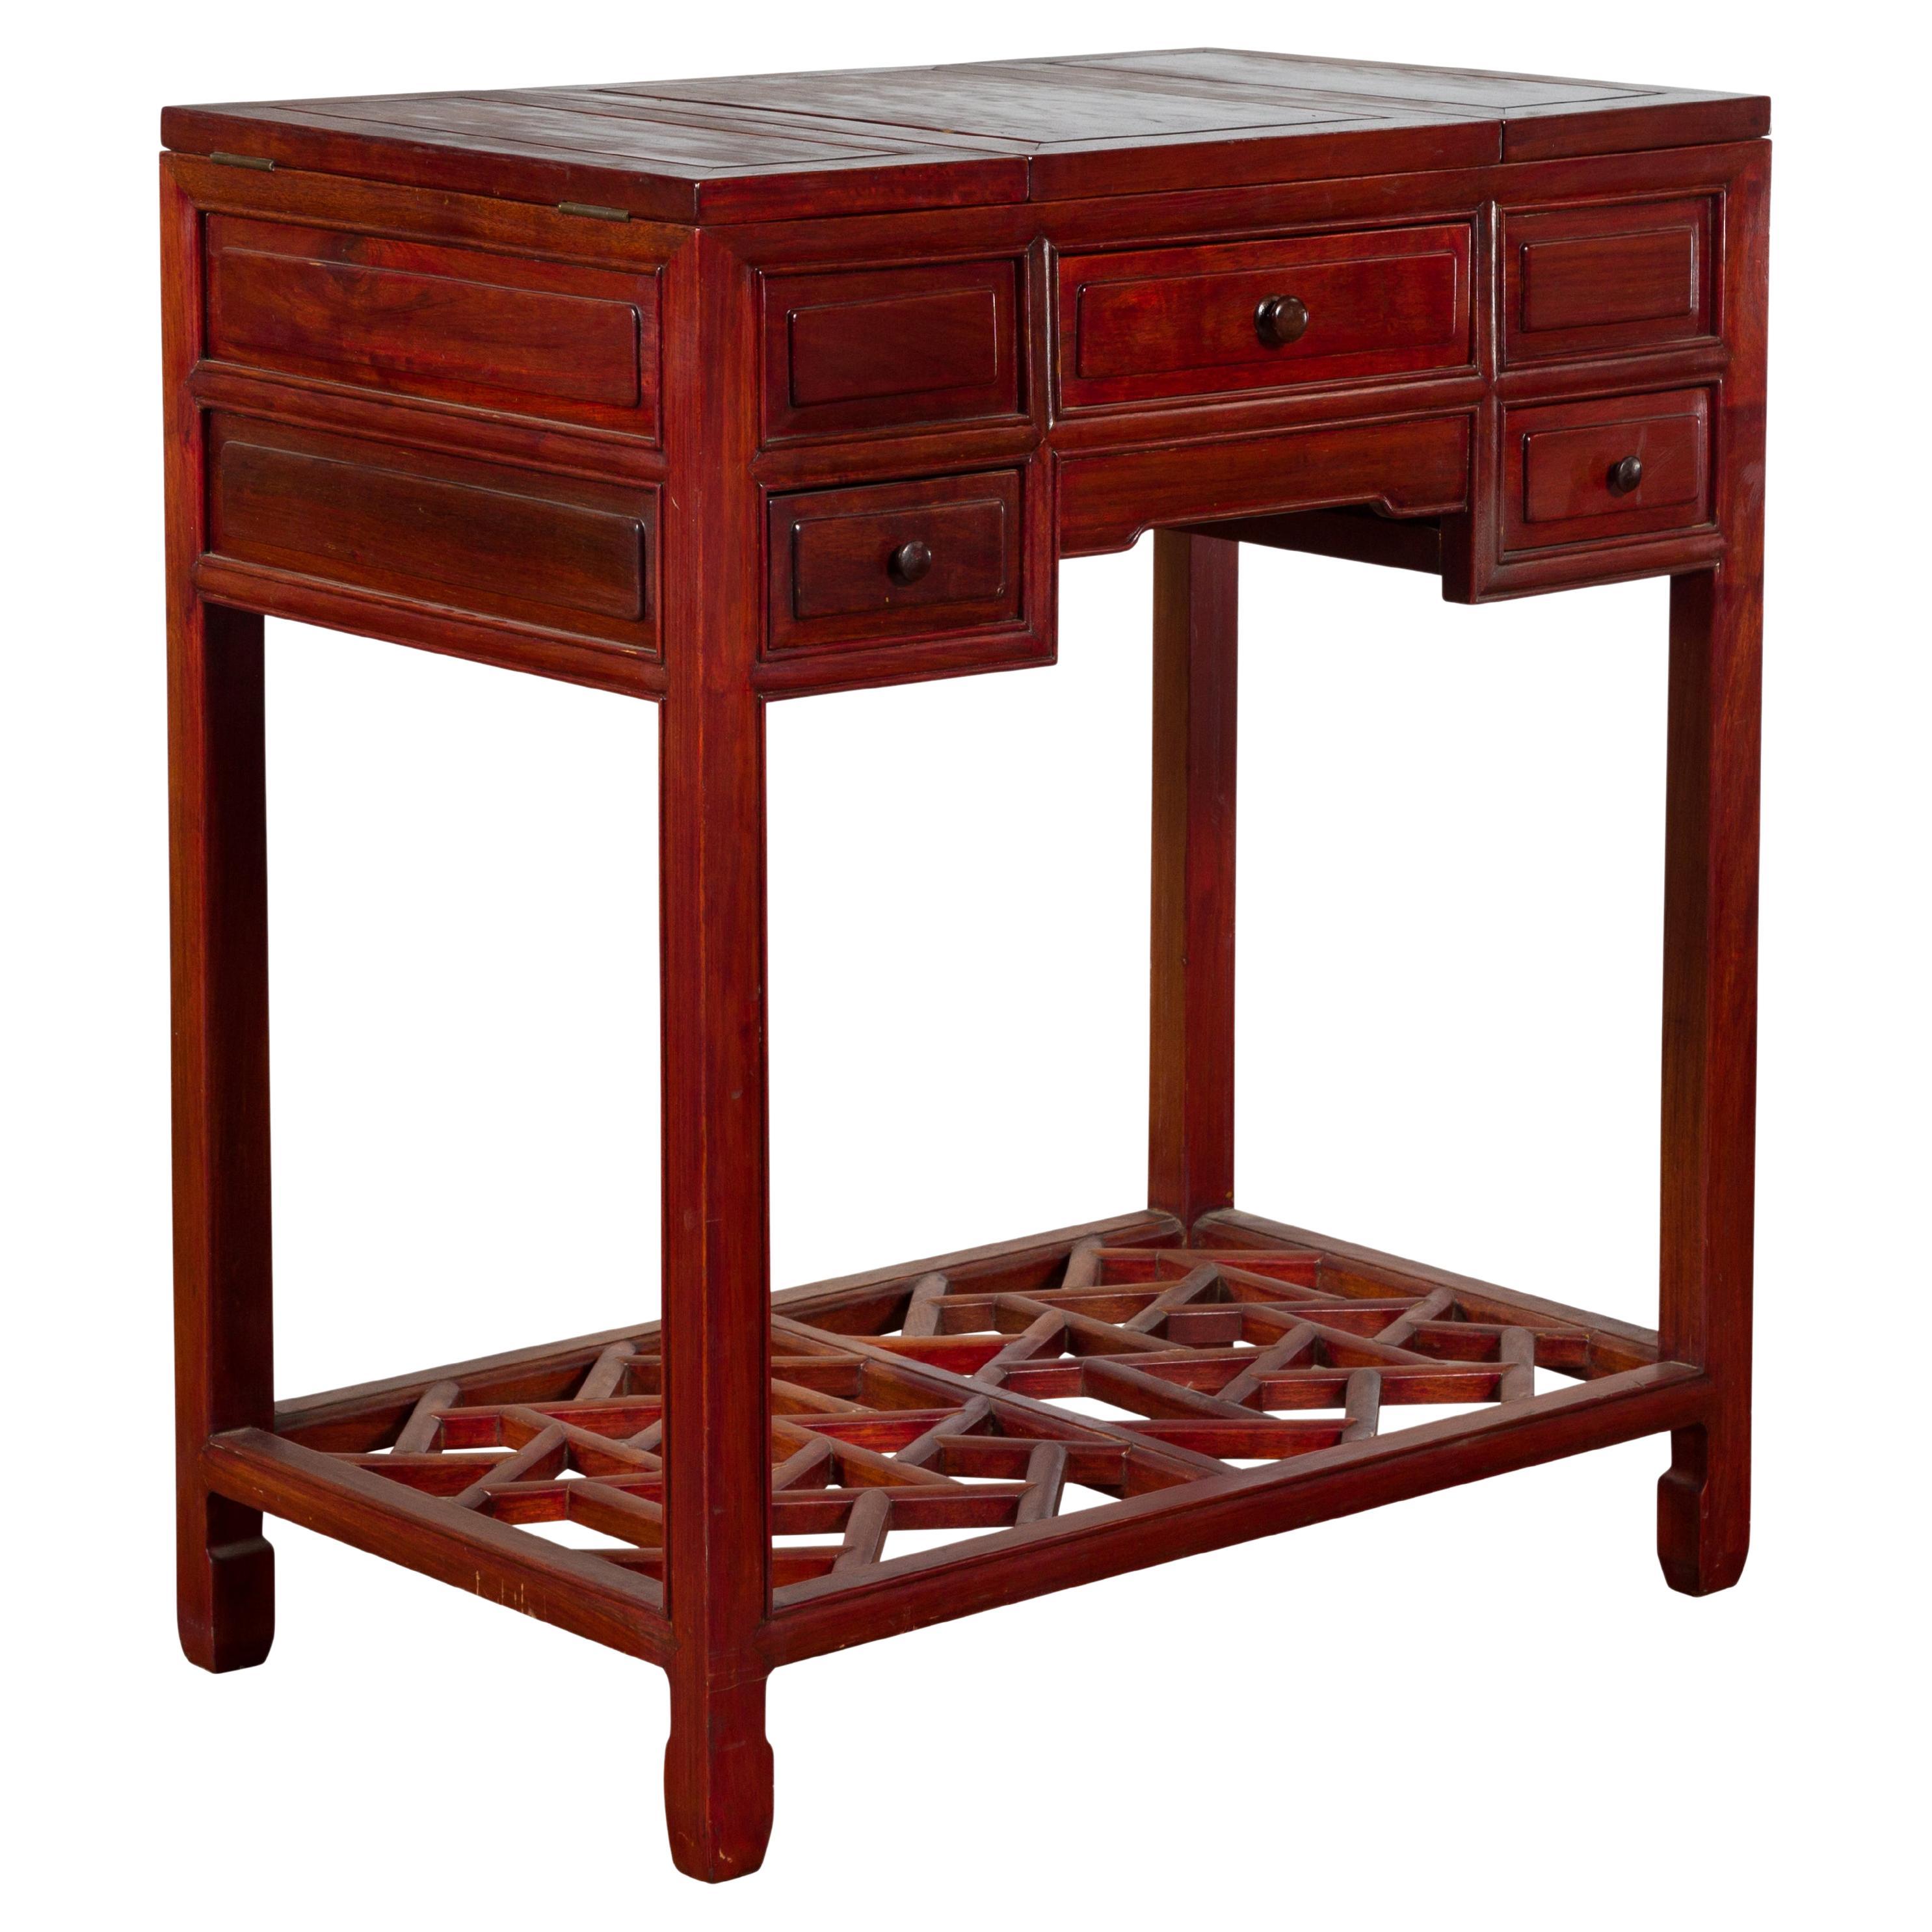 Table de coiffeuse chinoise vintage à trois tiroirs en bois laqué rouge avec miroir pliant